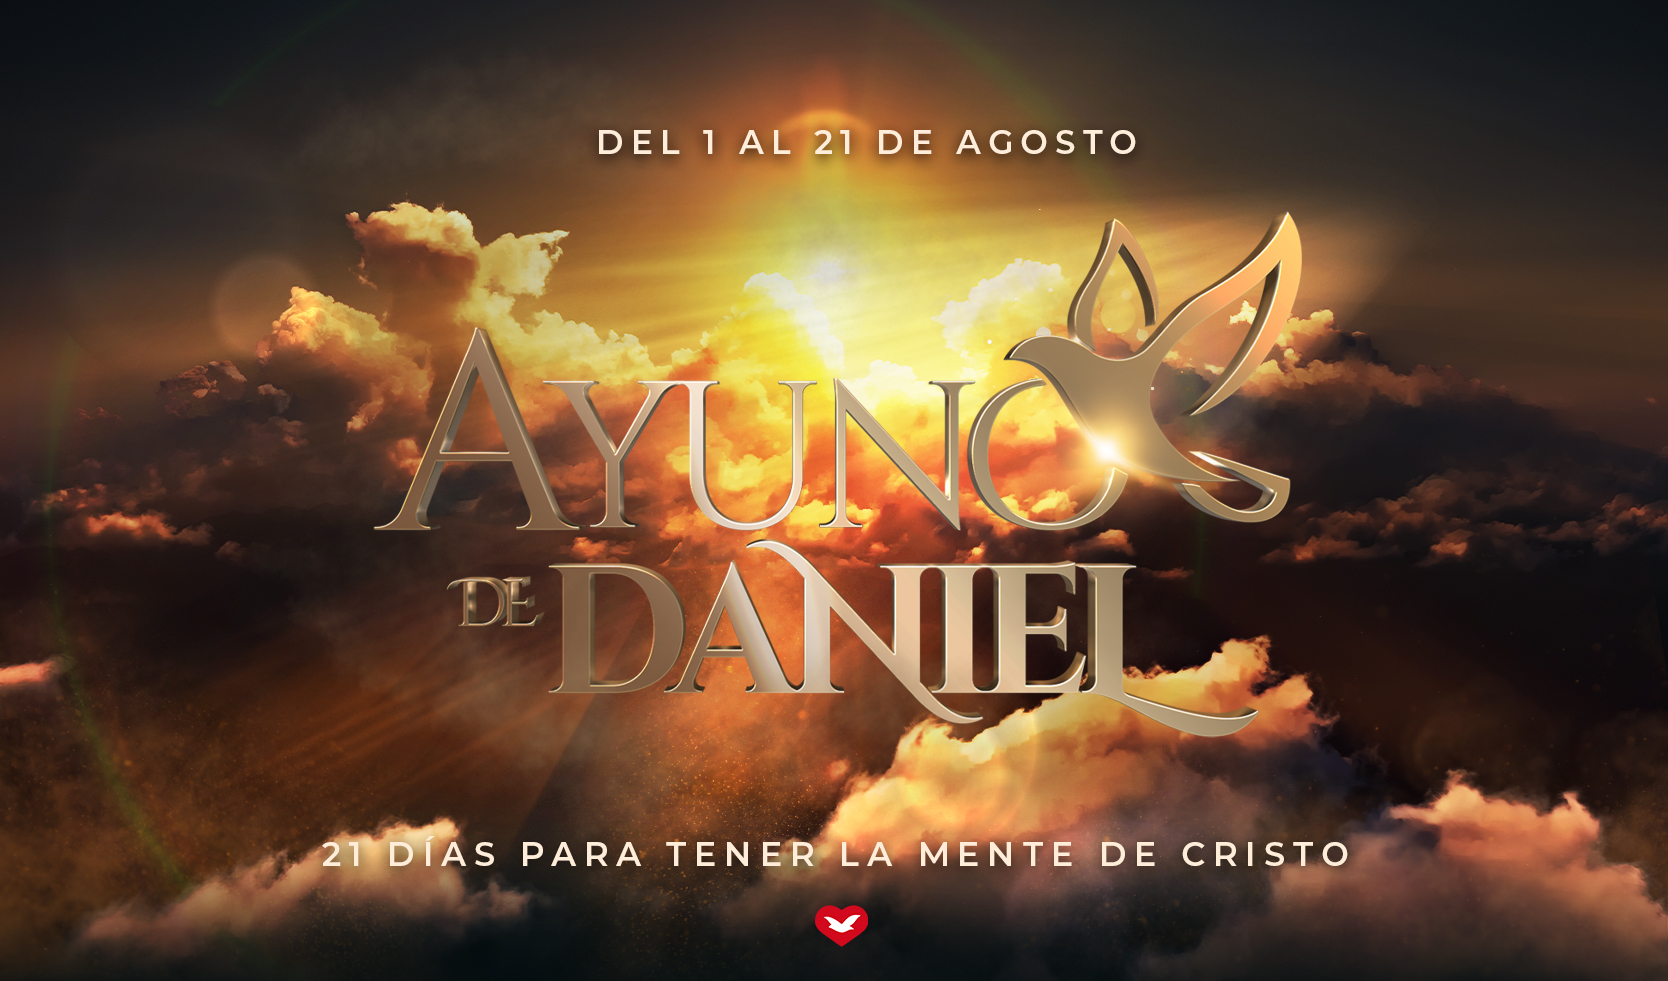 Ayuno de Daniel: 21 días para tener la mente de Cristo